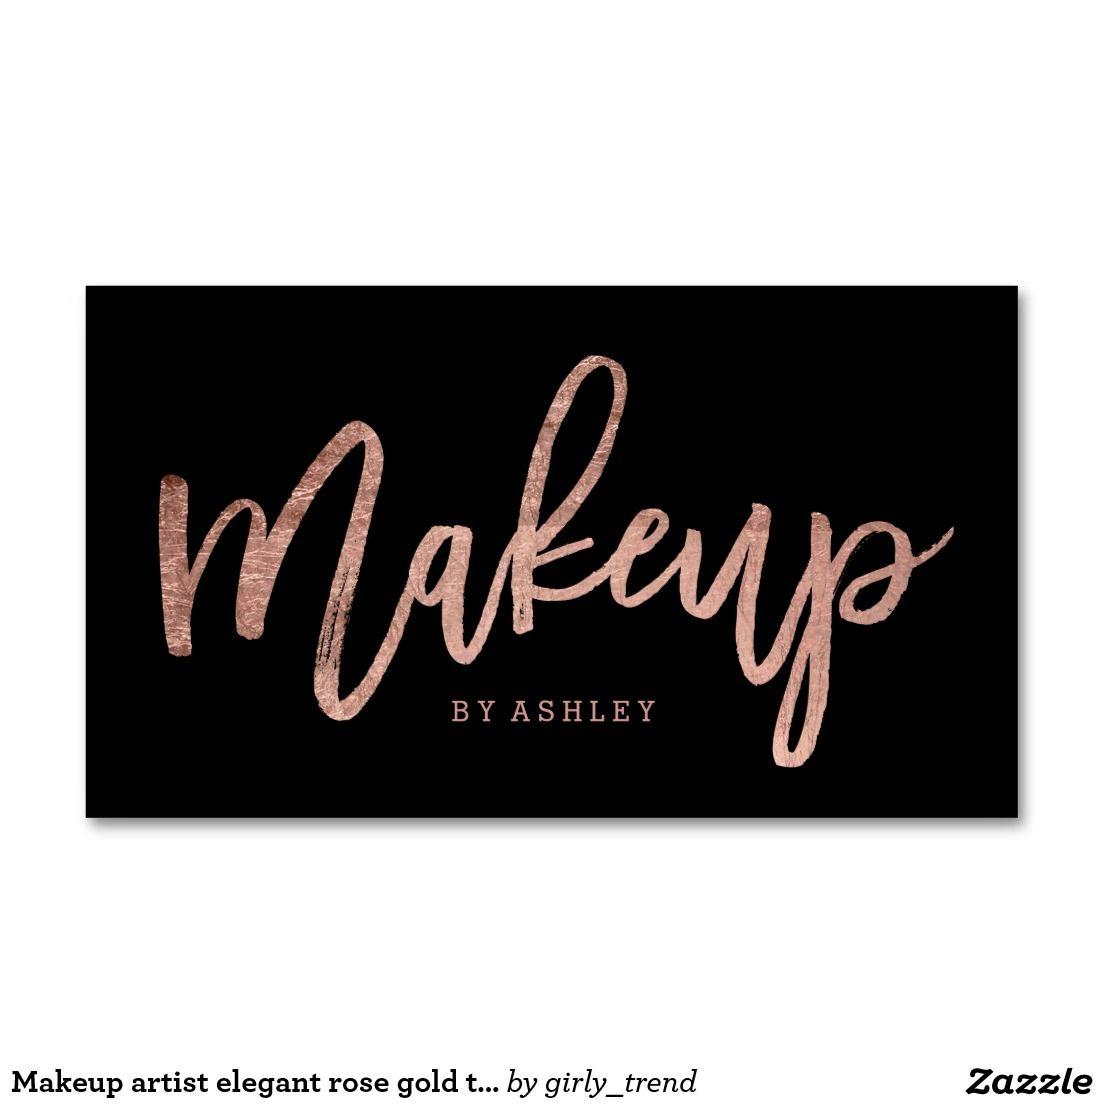 Rose Gold and Black Logo - Makeup artist elegant rose gold typography black business card ...